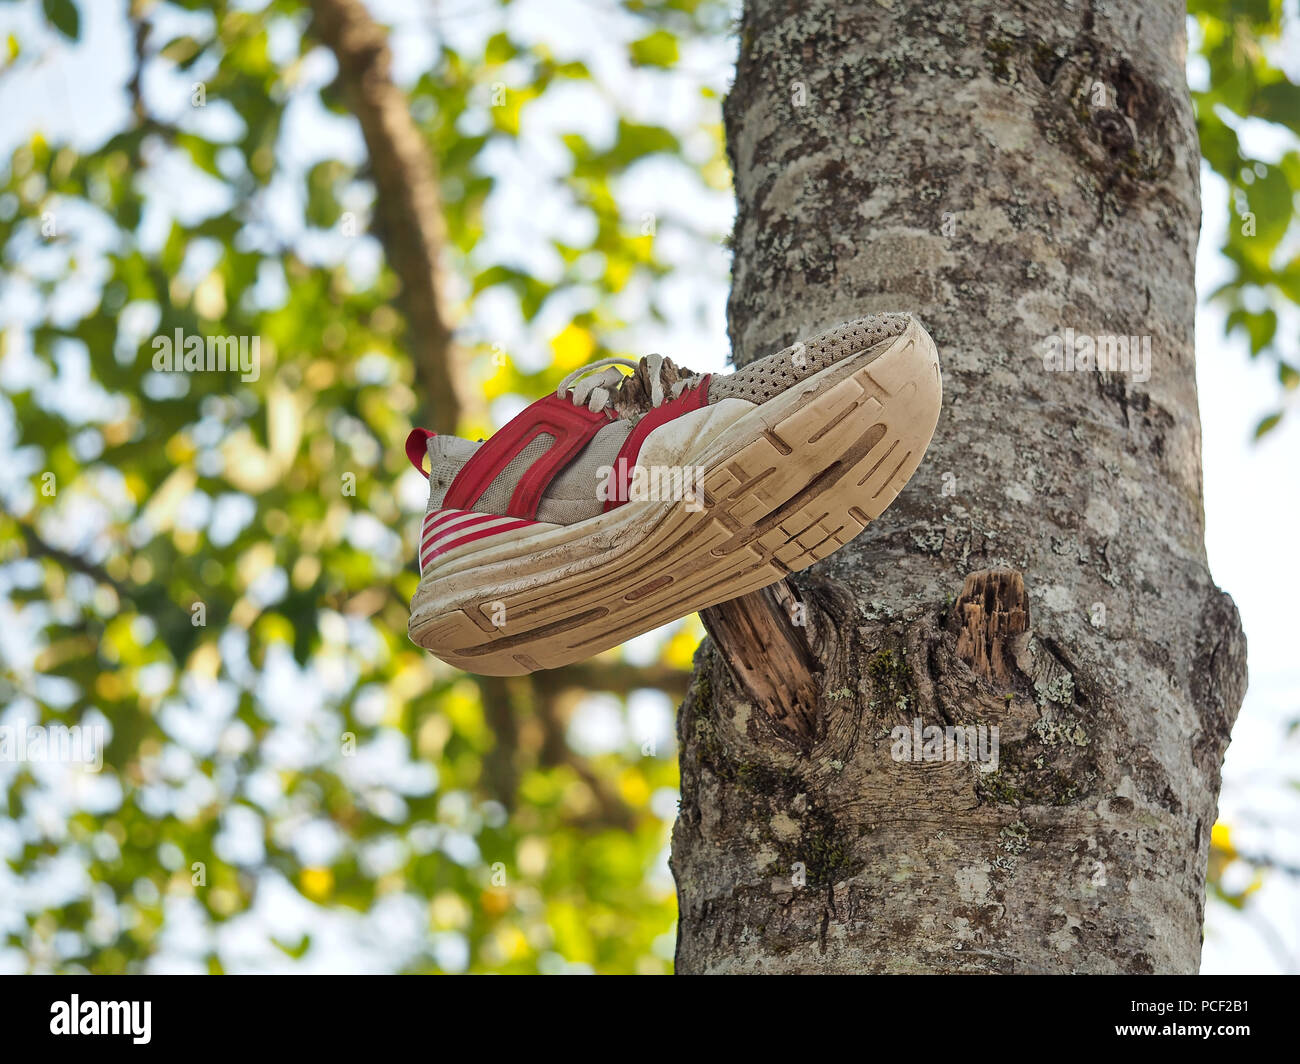 Sneaker shoe on a tree Stock Photo